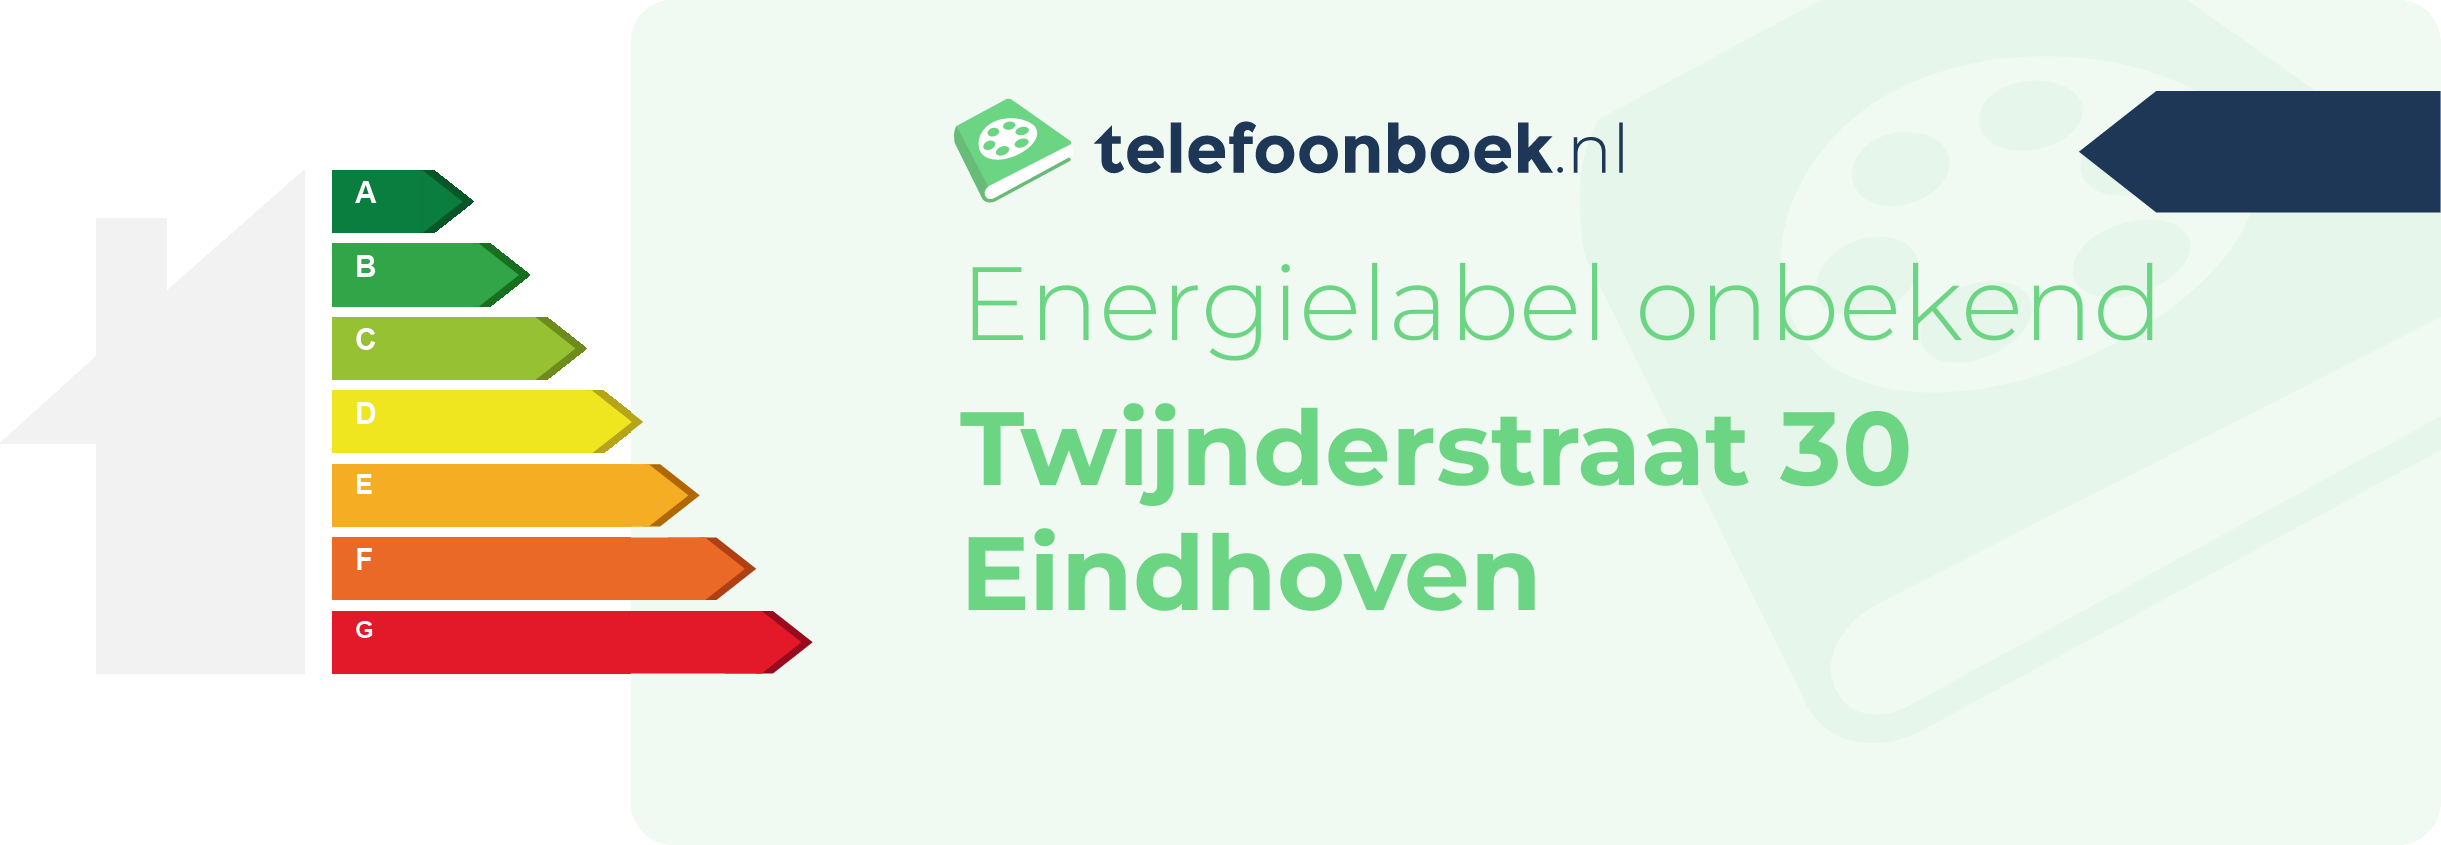 Energielabel Twijnderstraat 30 Eindhoven